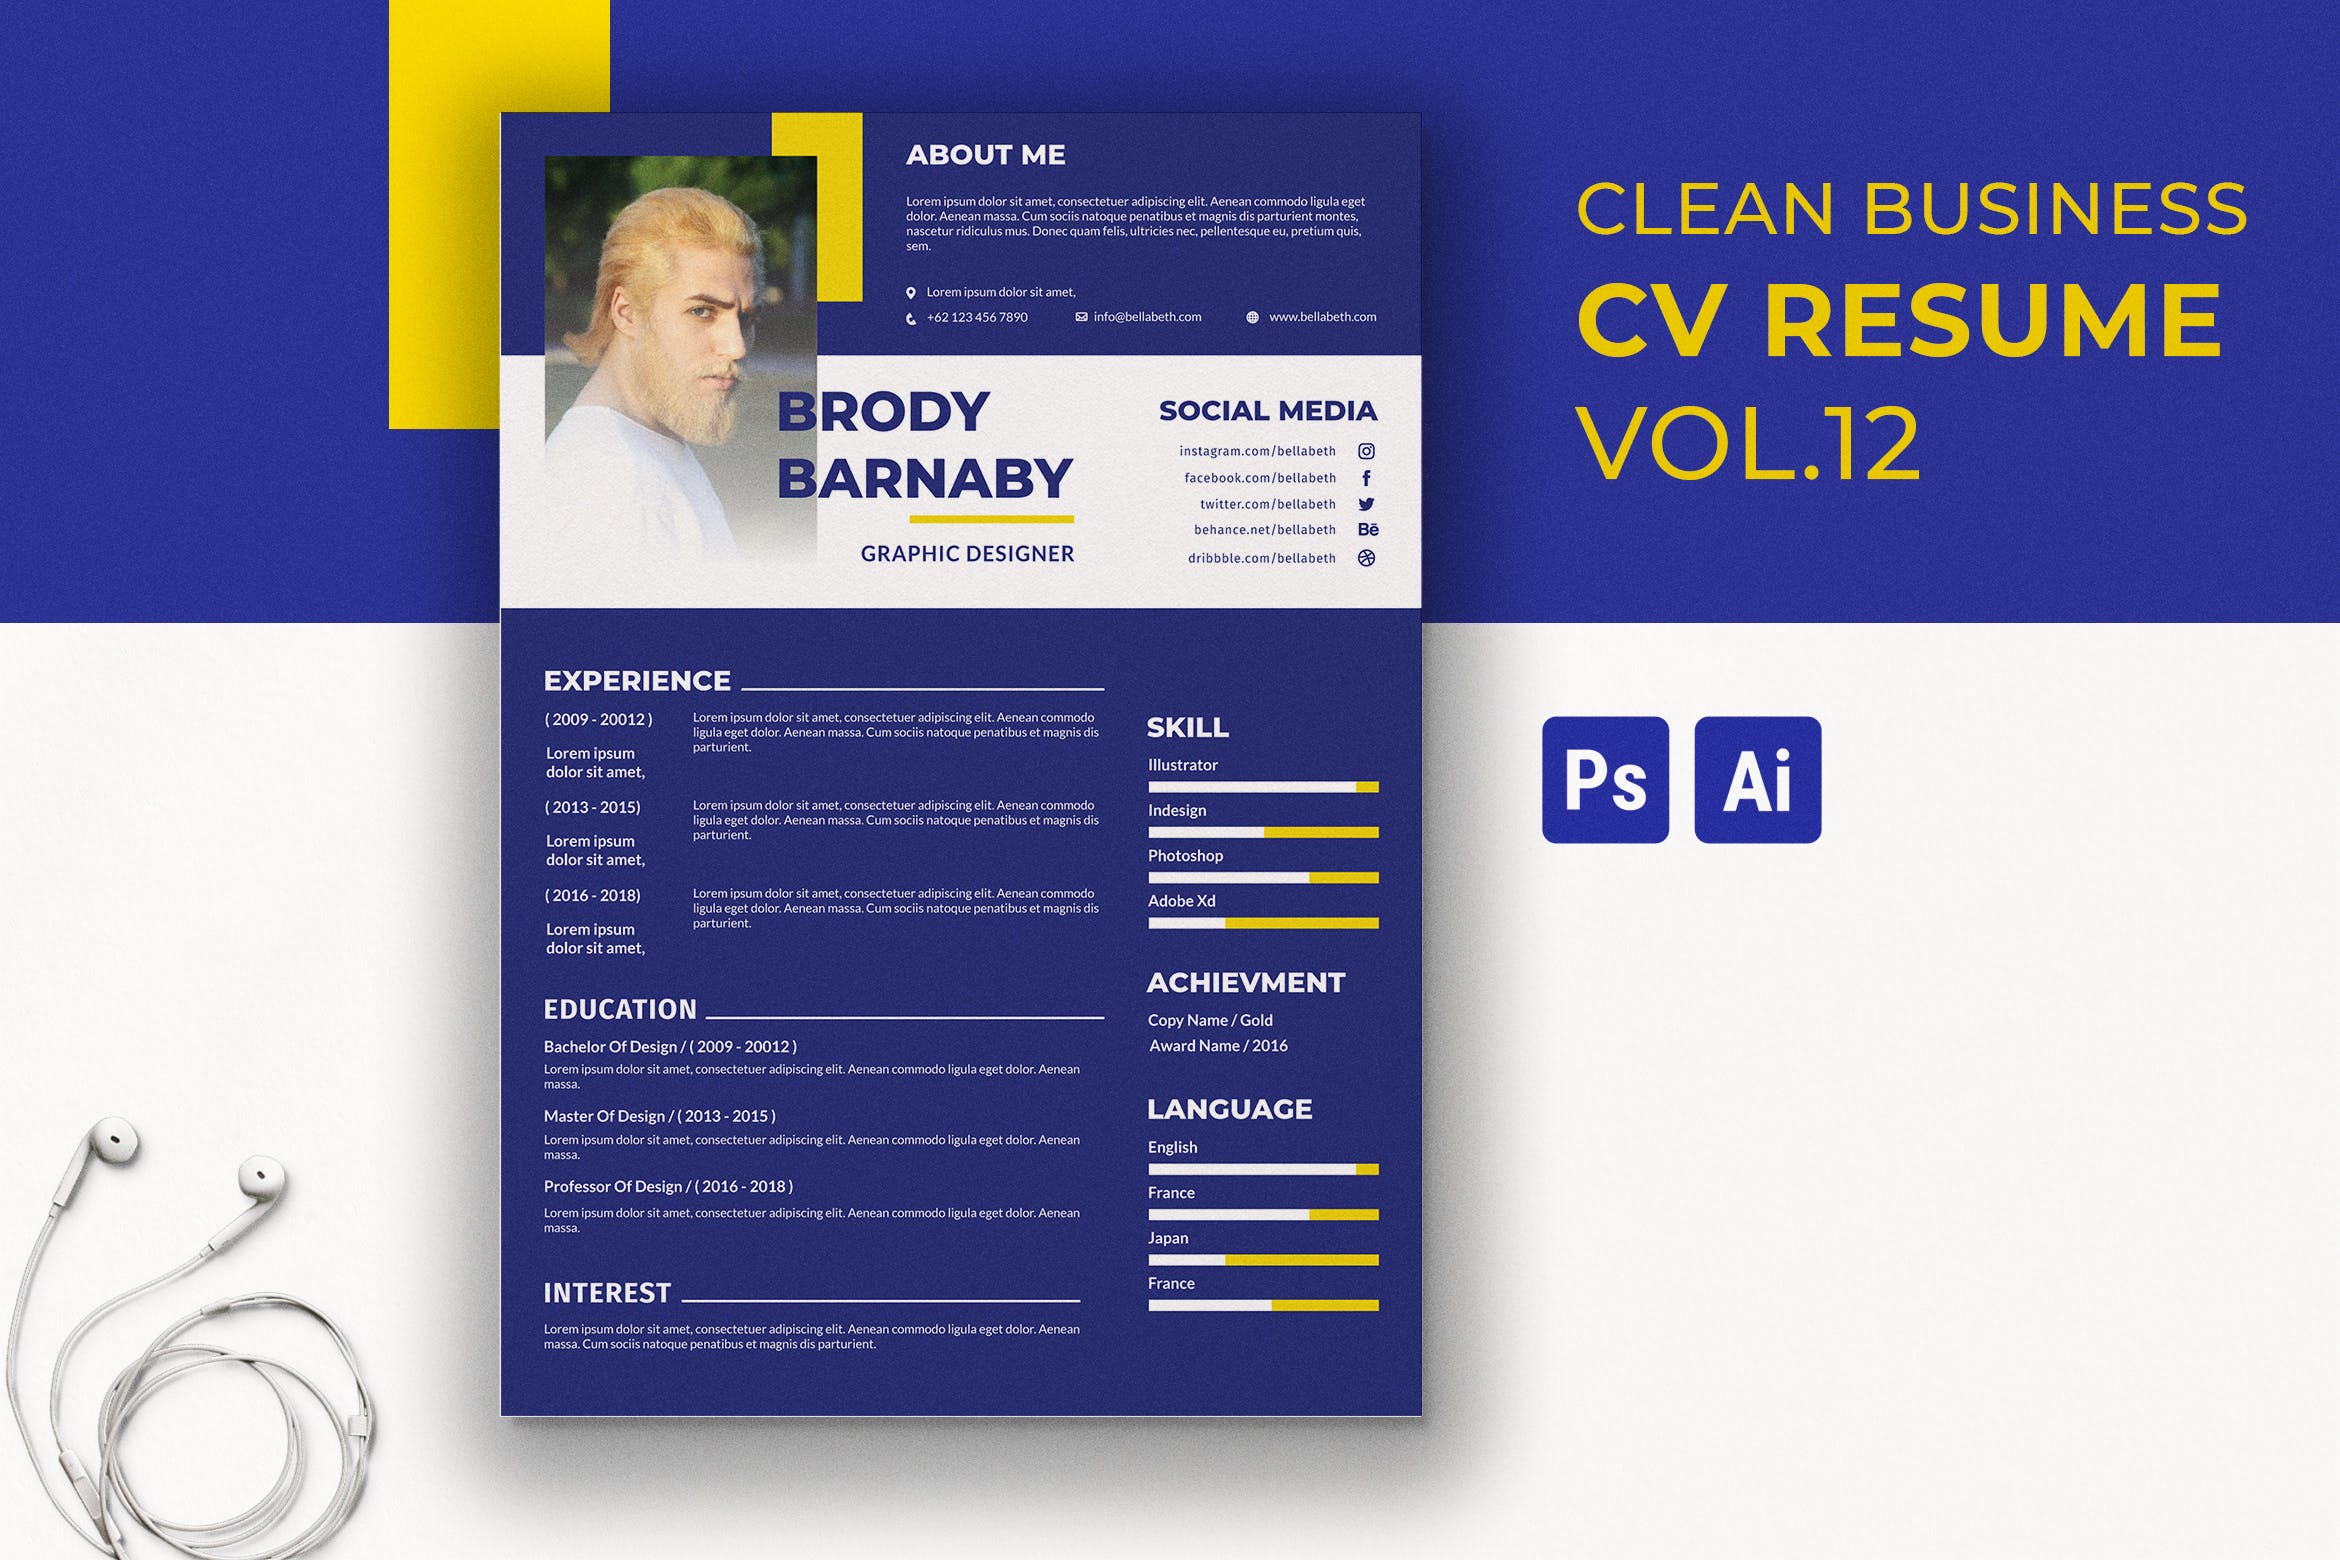 简朴设计风格设计师简历模板v13 Clean Resume Template Vol. 13插图